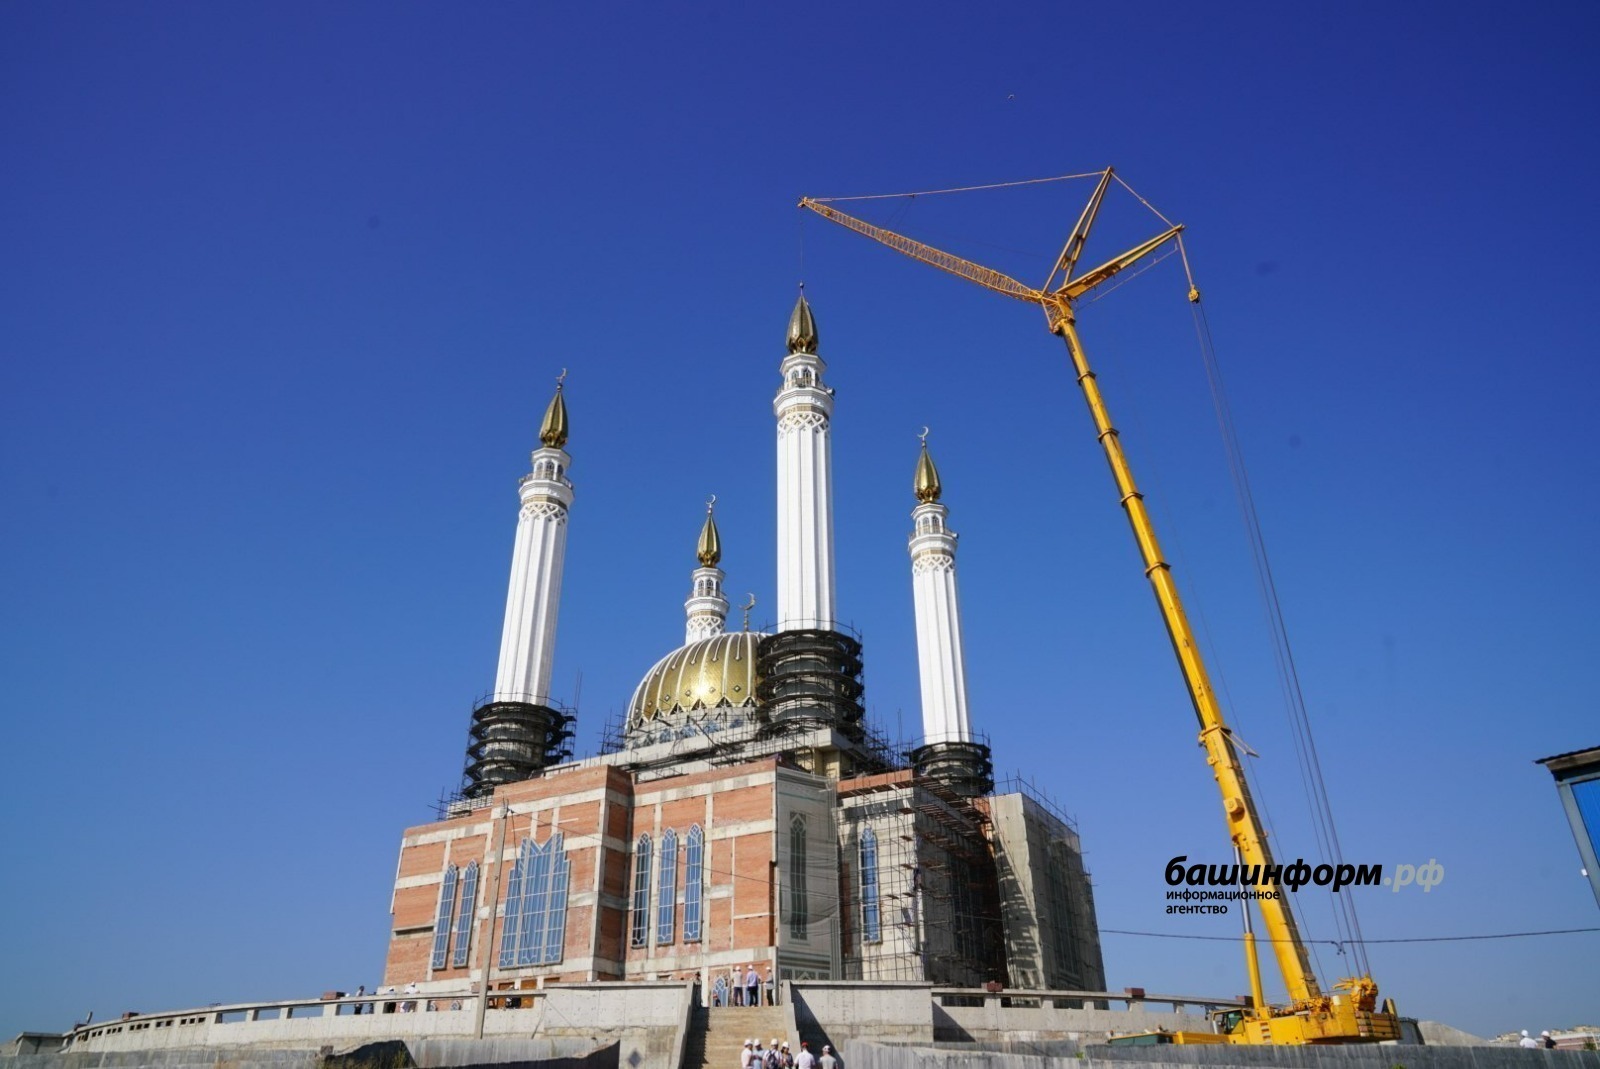 Глава Башкирии провел рабочее совещание по строительству мечети «Ар-Рахим»